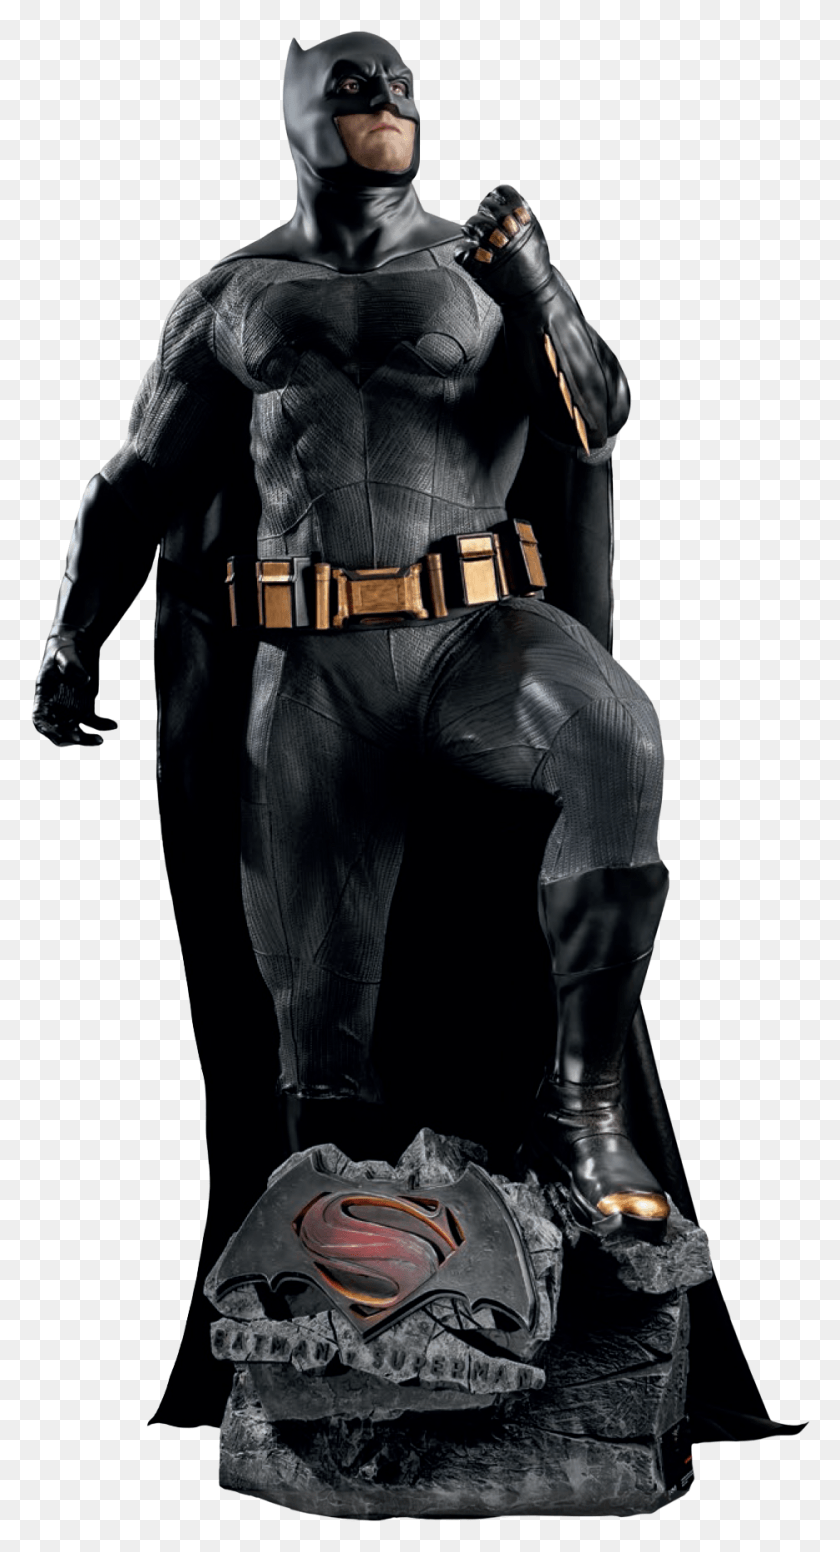 938x1795 Descargar Png Batman Vs Superman Batman Estatua De Tamaño Real, Persona, Humano, Ropa Hd Png